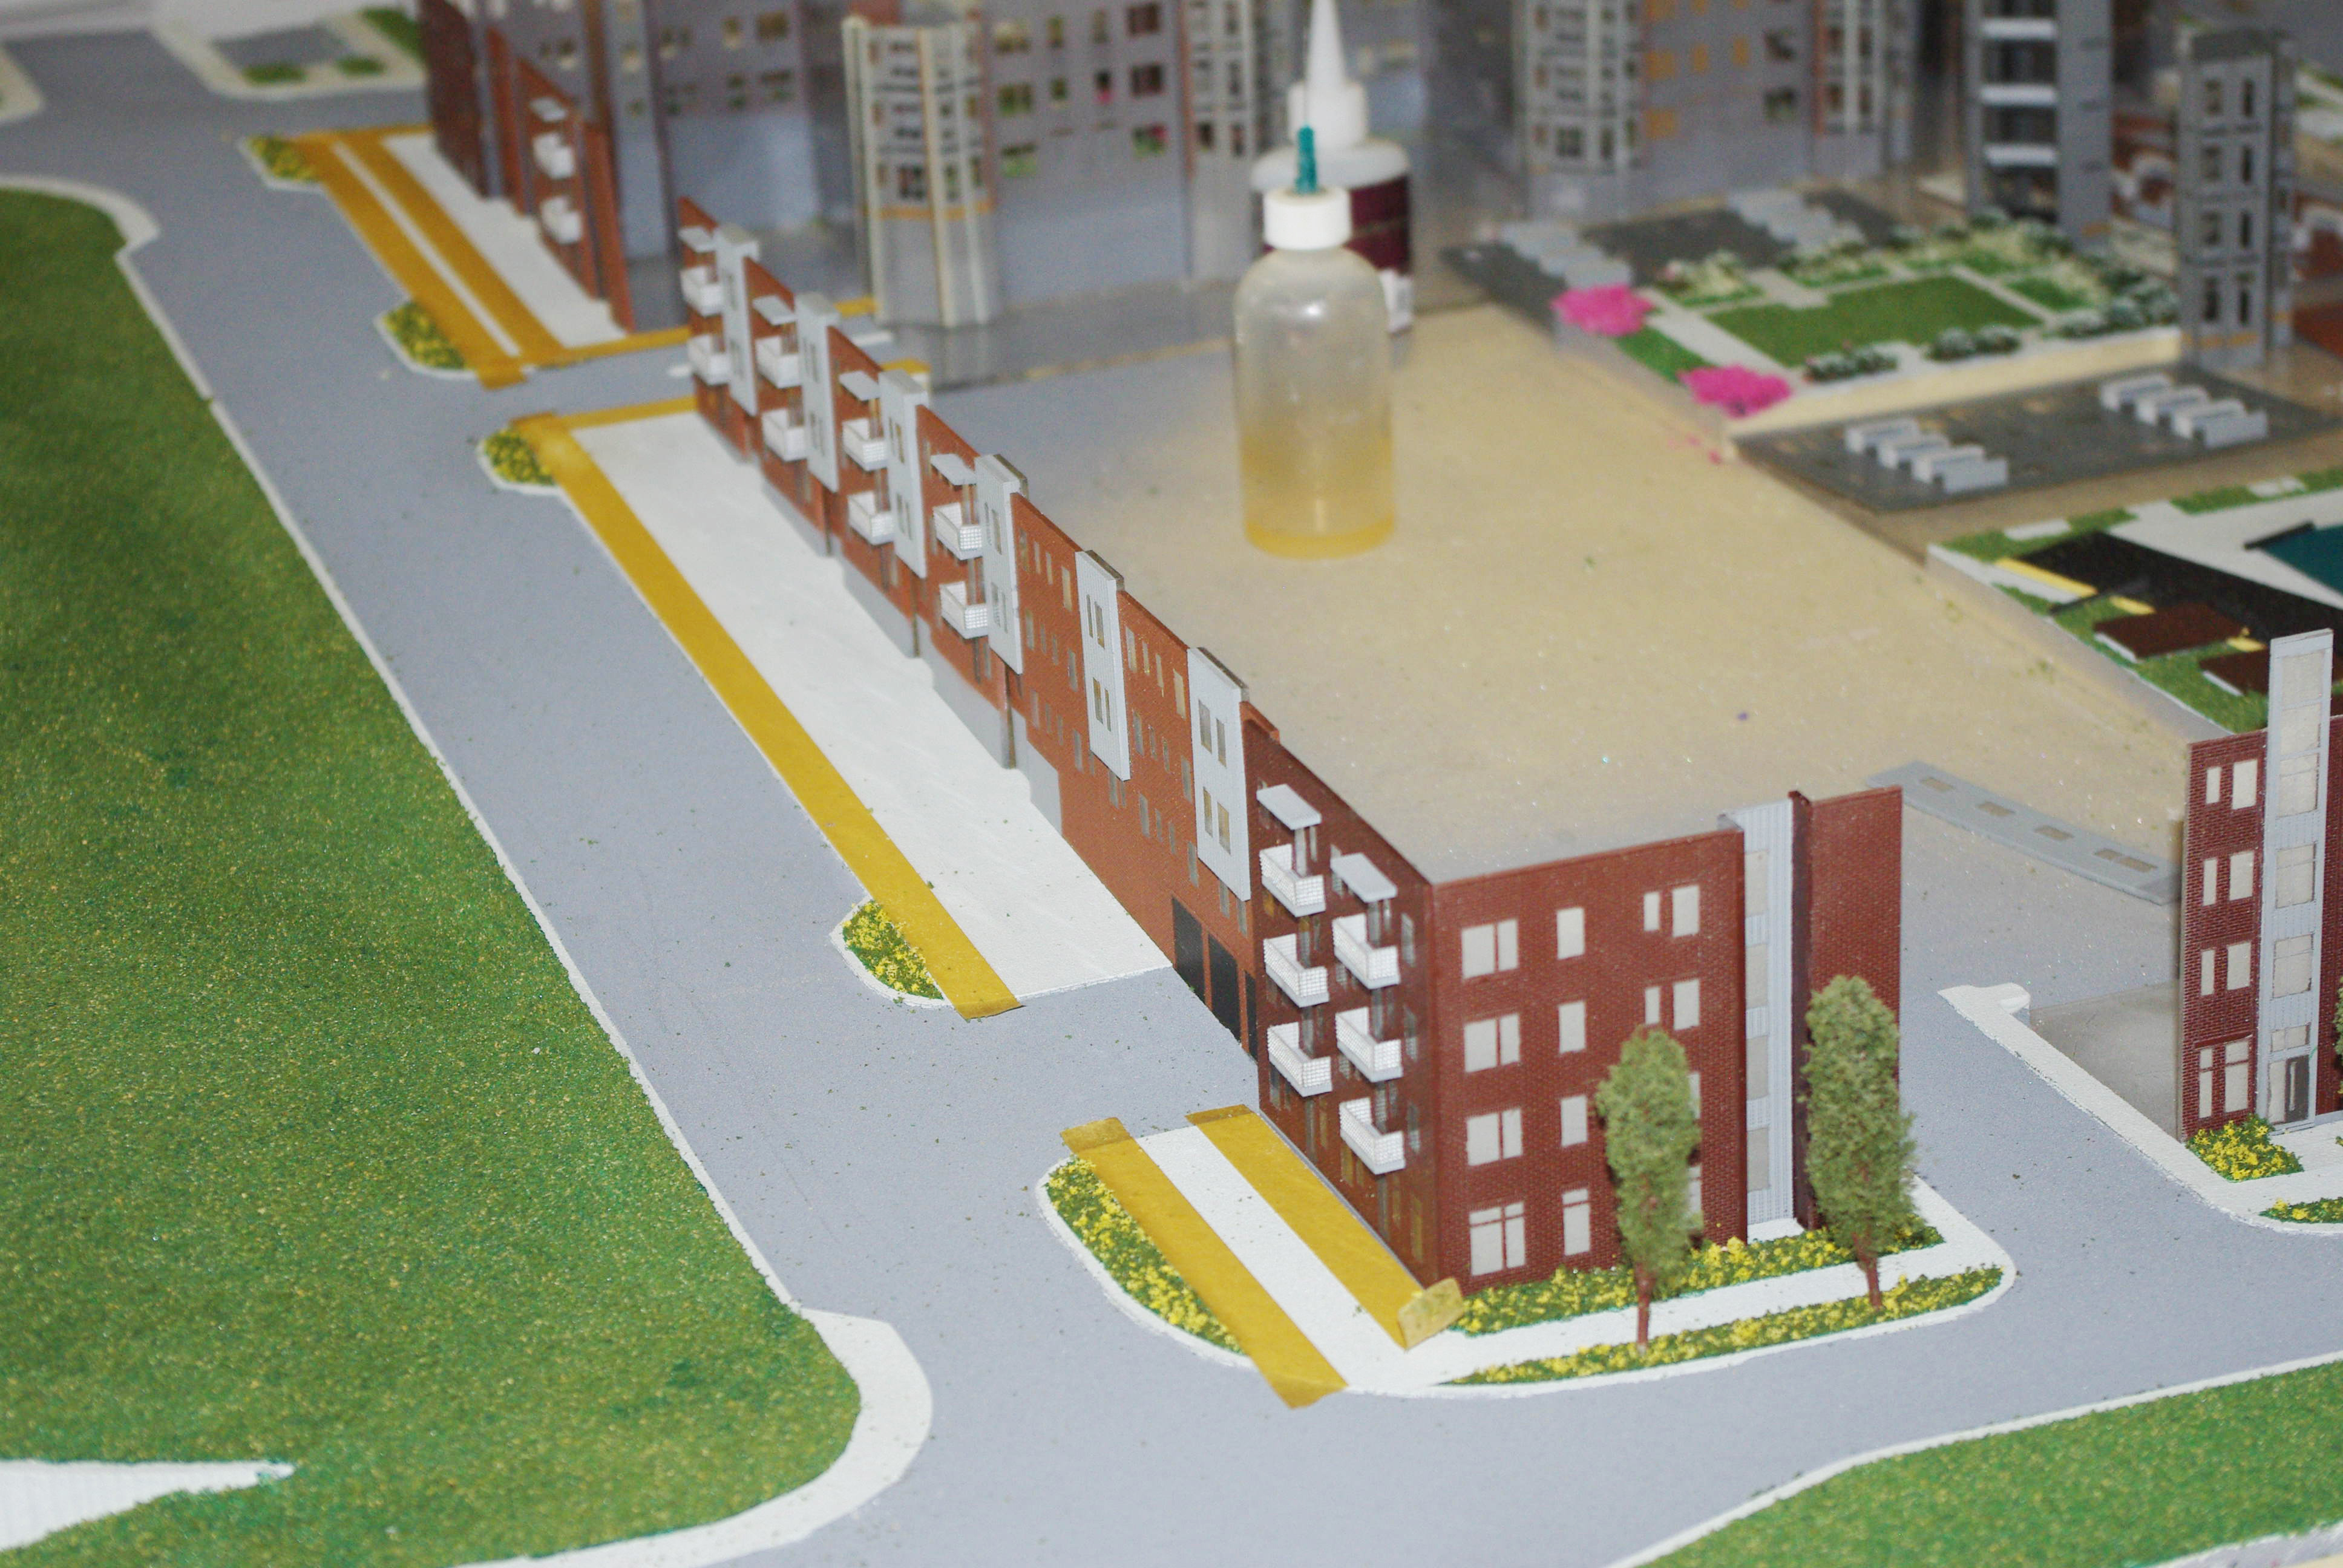 Condominium Architectural Model